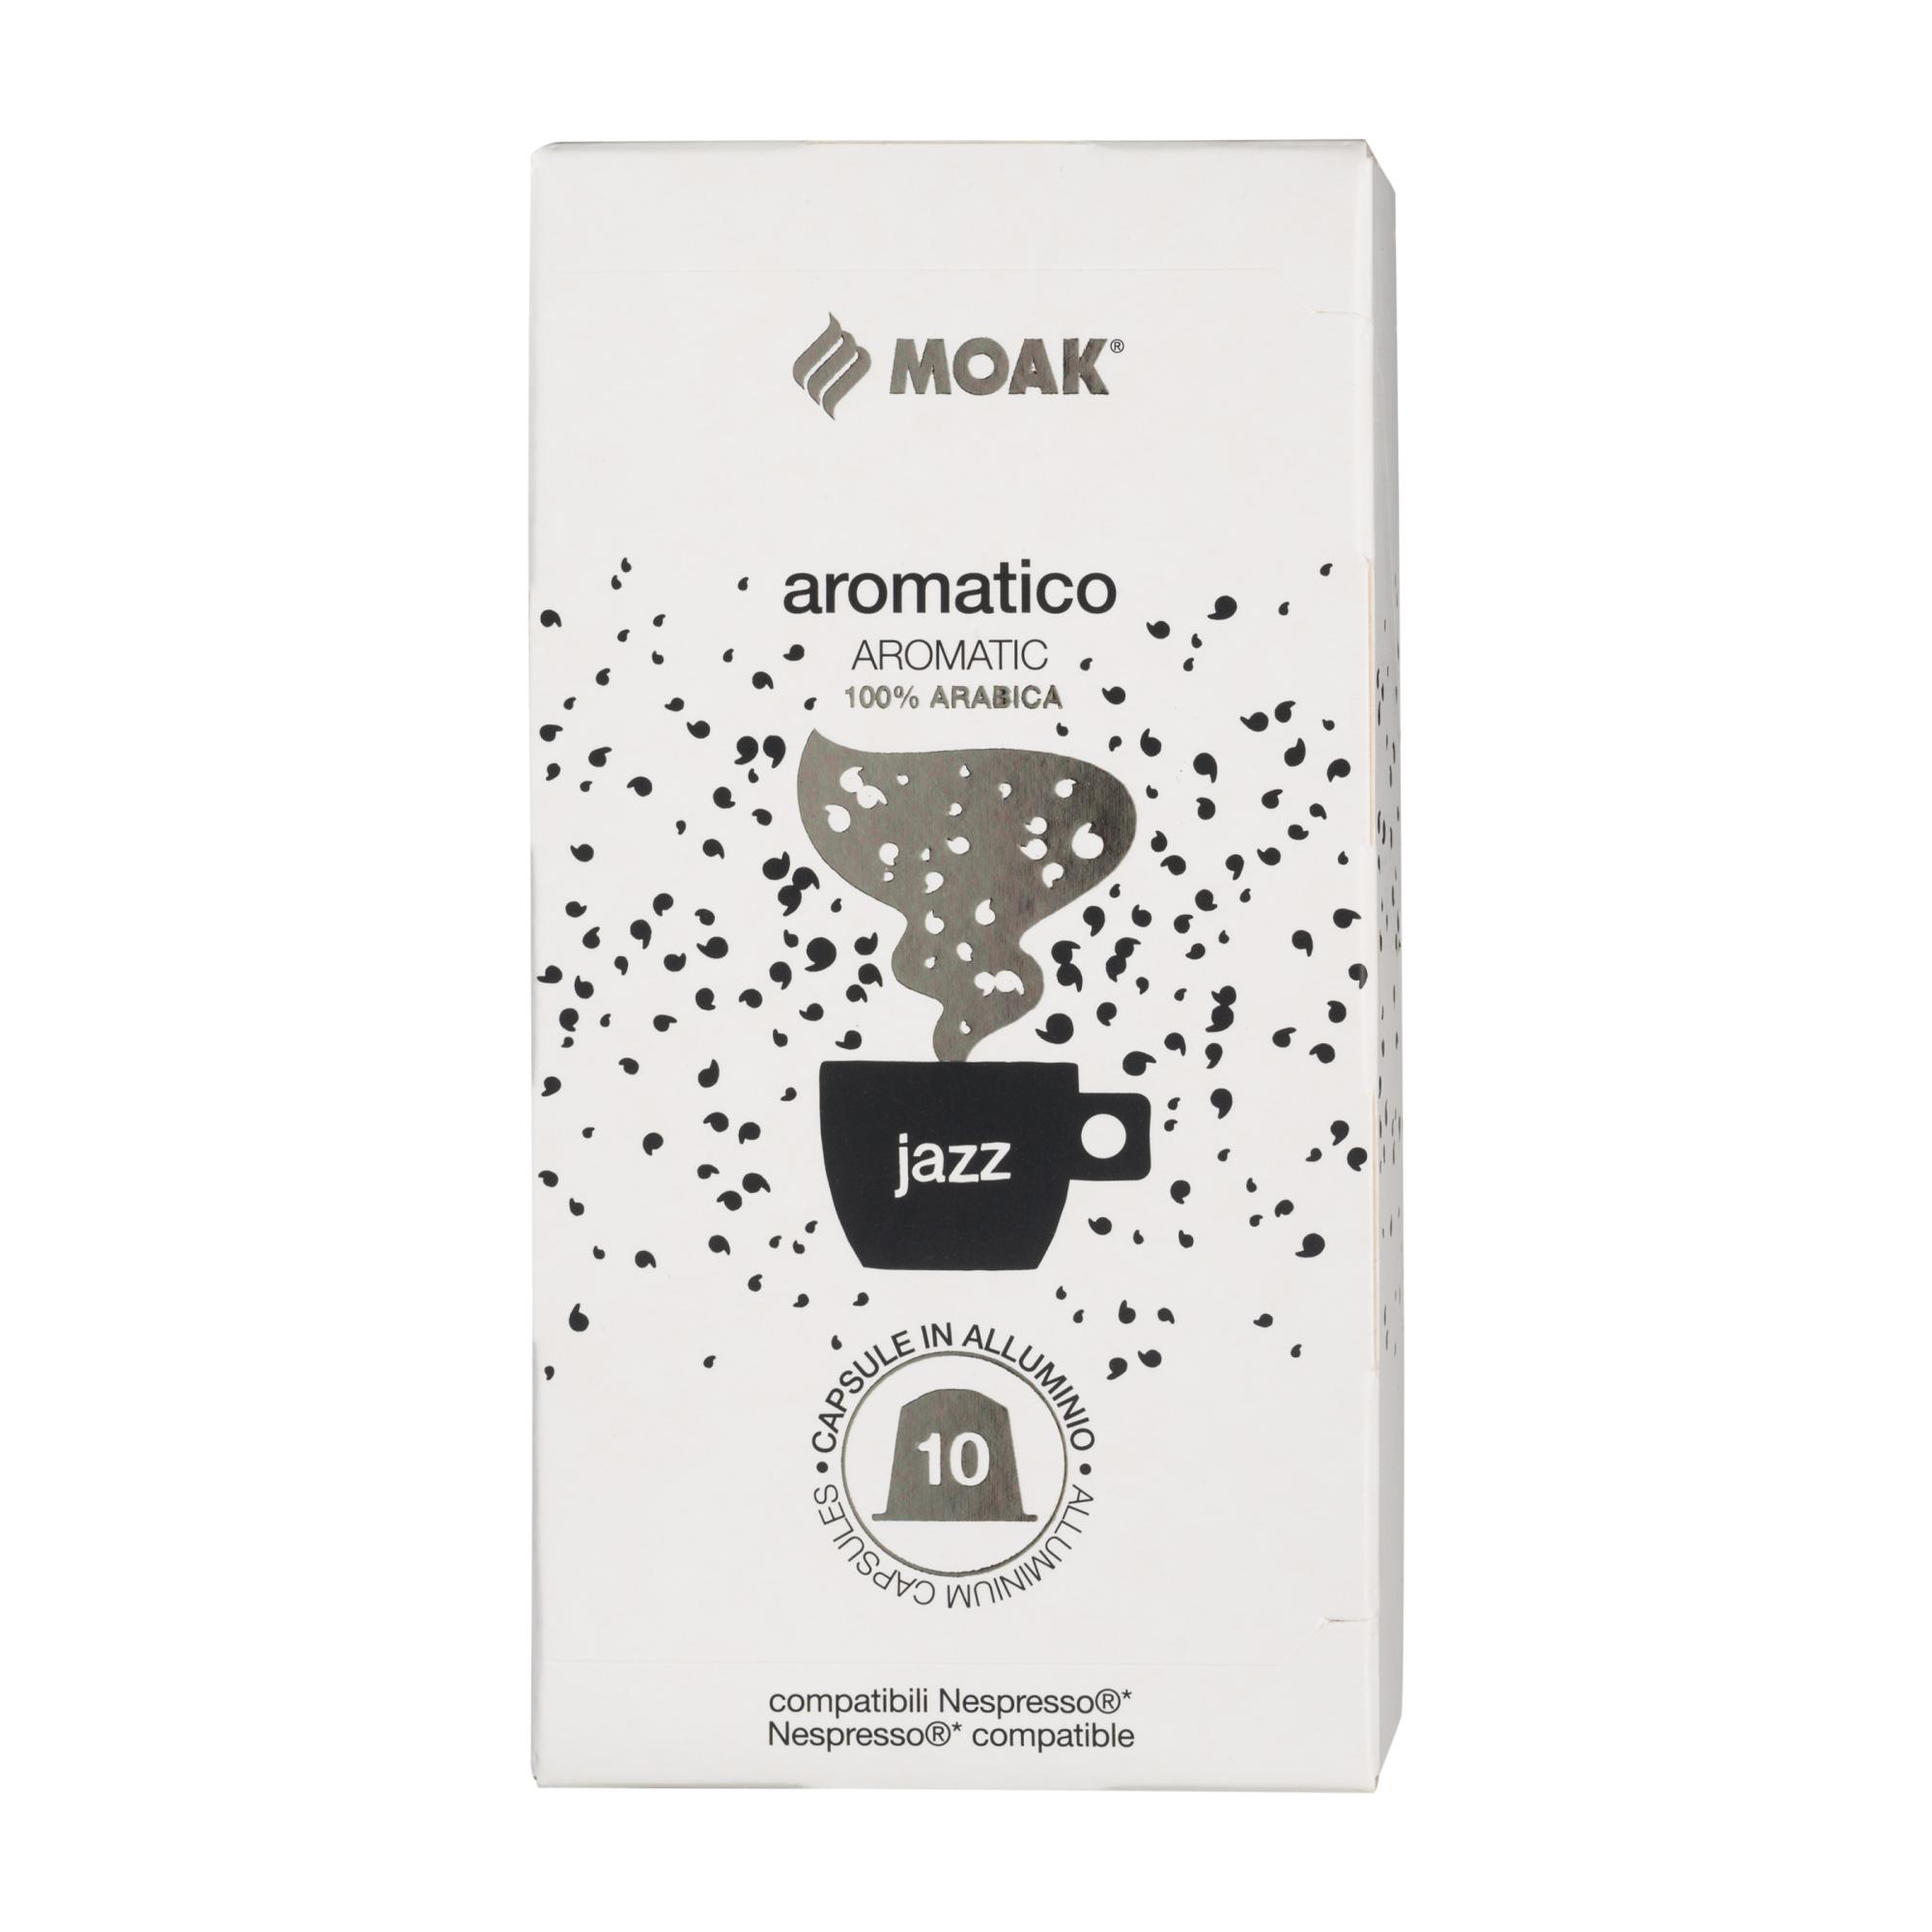 Кофе в капсулах Moak Nespresso Aromatico Jazz, 10 упаковок (100шт)